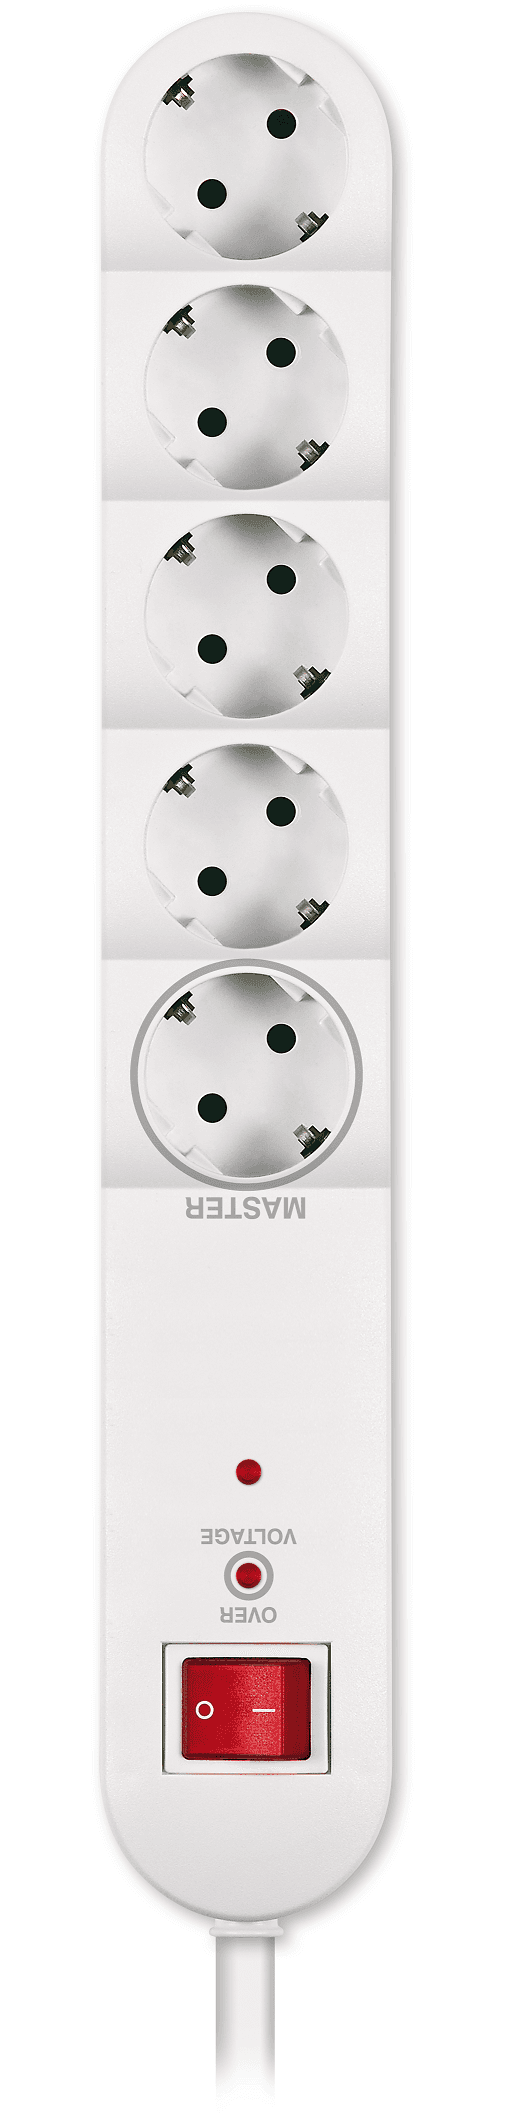 ALING-CONEL Produžni kabl sa sklopkom i prenaponskom zaštitom 5x - 1.5m